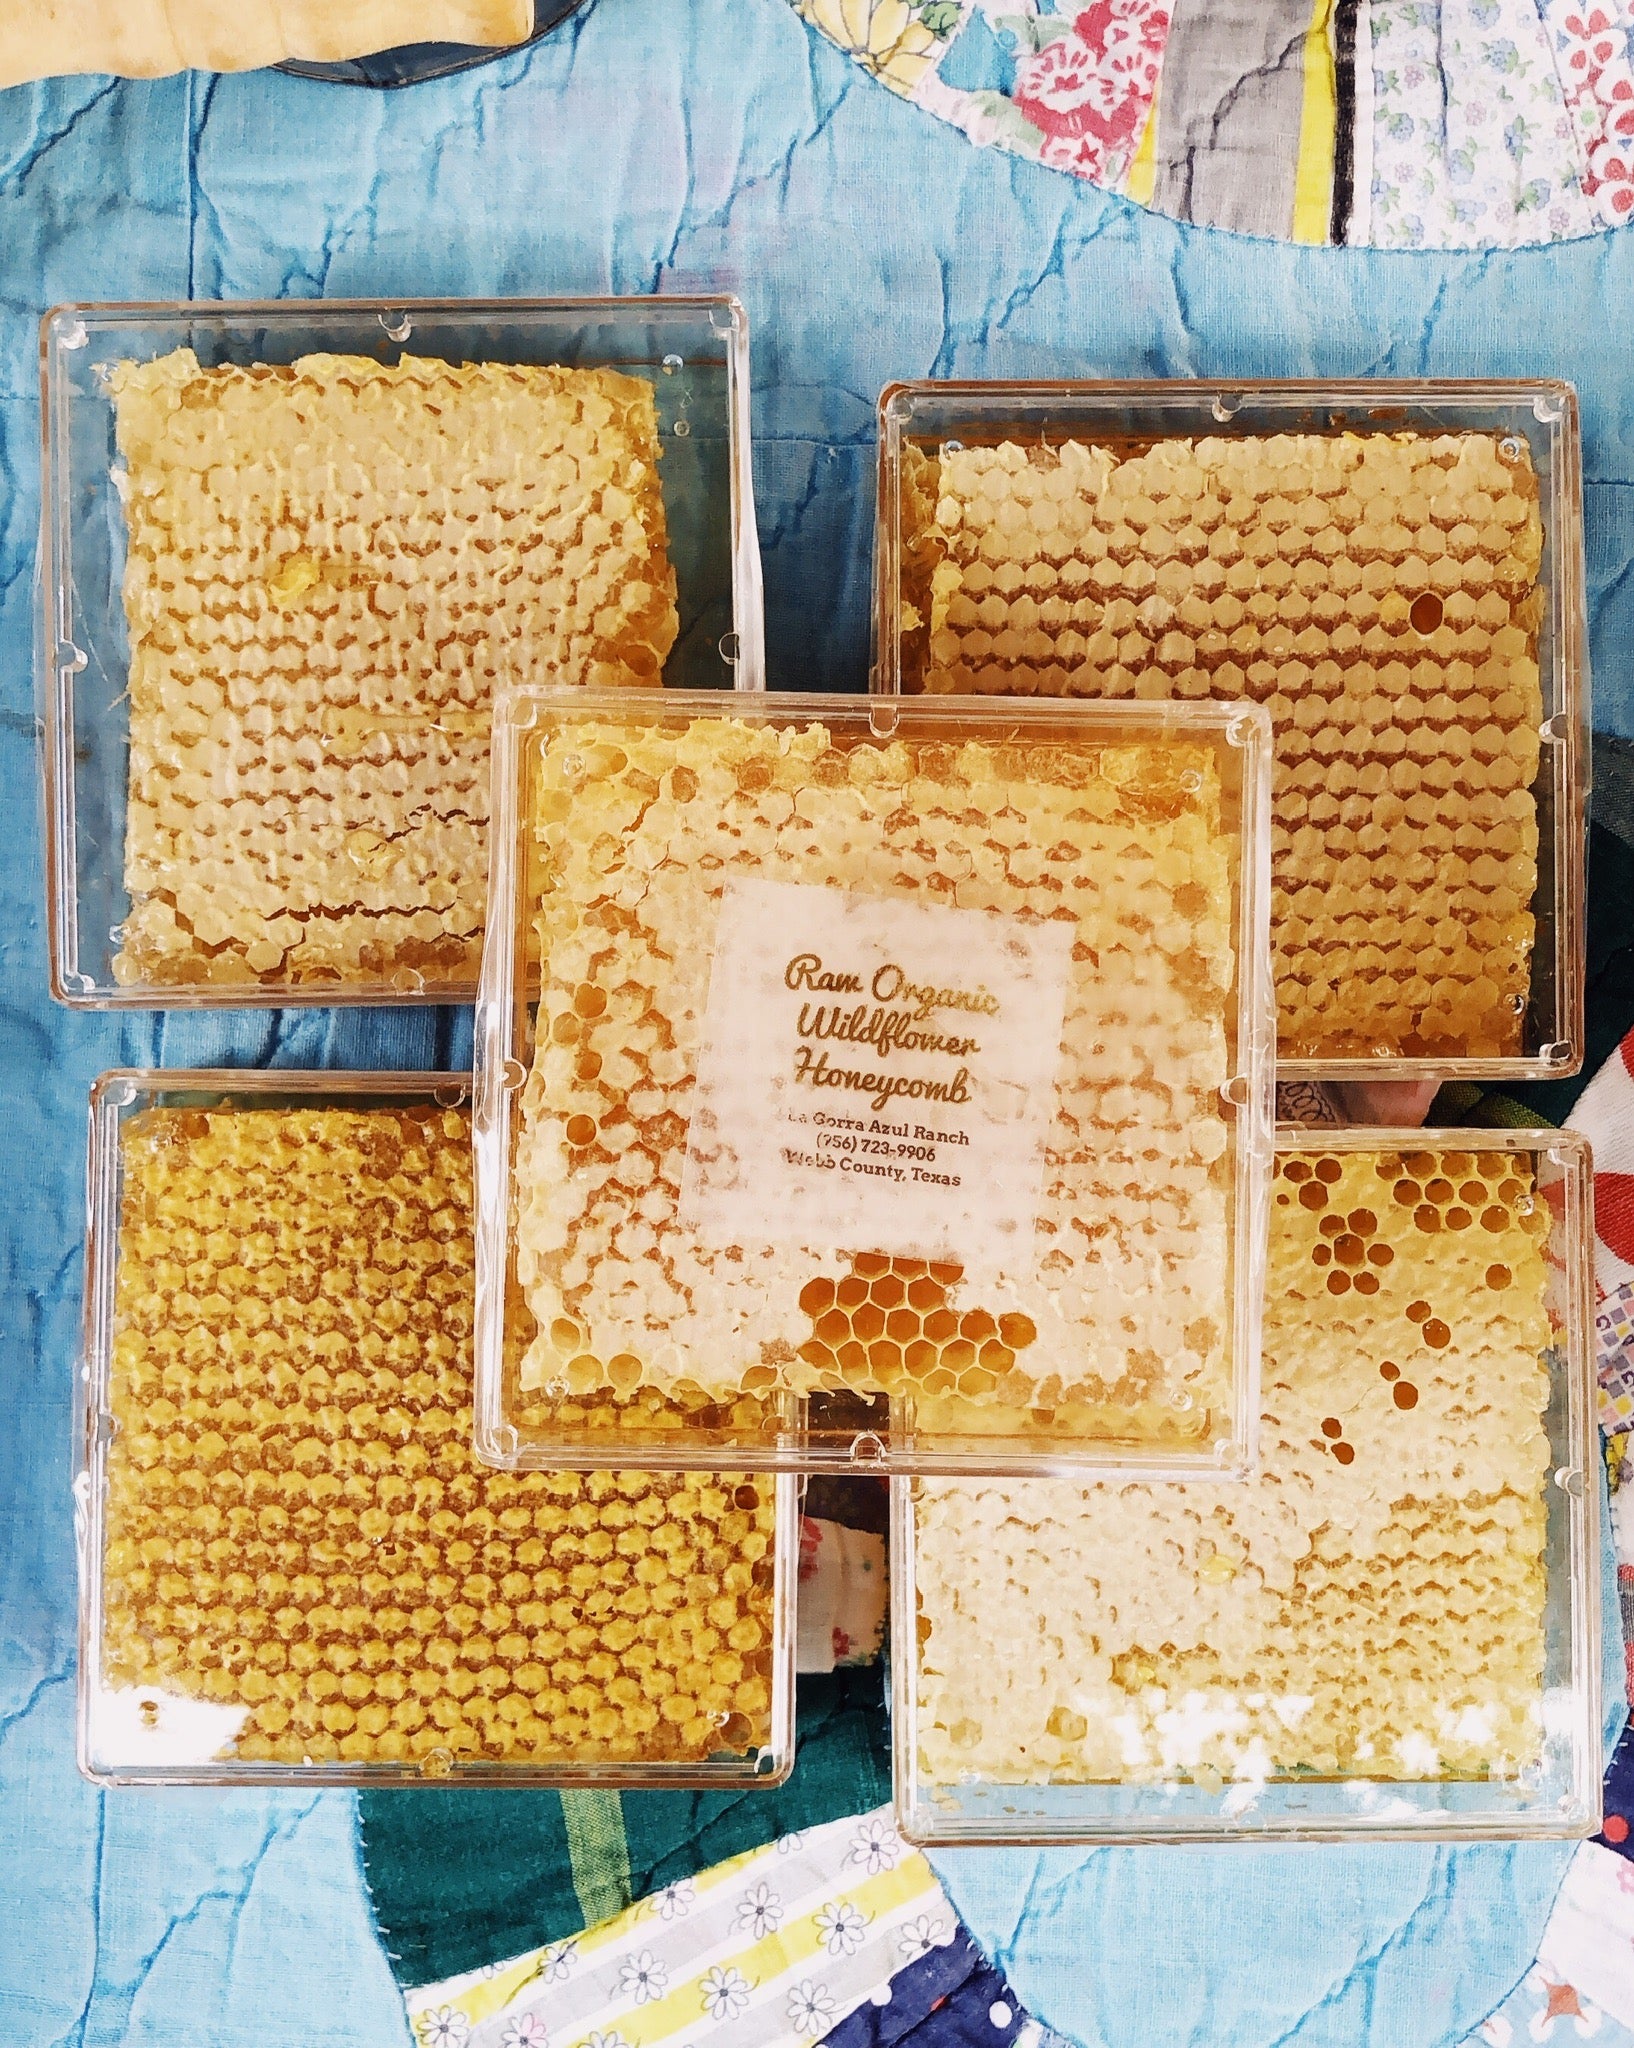 Honeycomb (Cut Comb Raw Local Honey) - La Gorra Azul Ranch